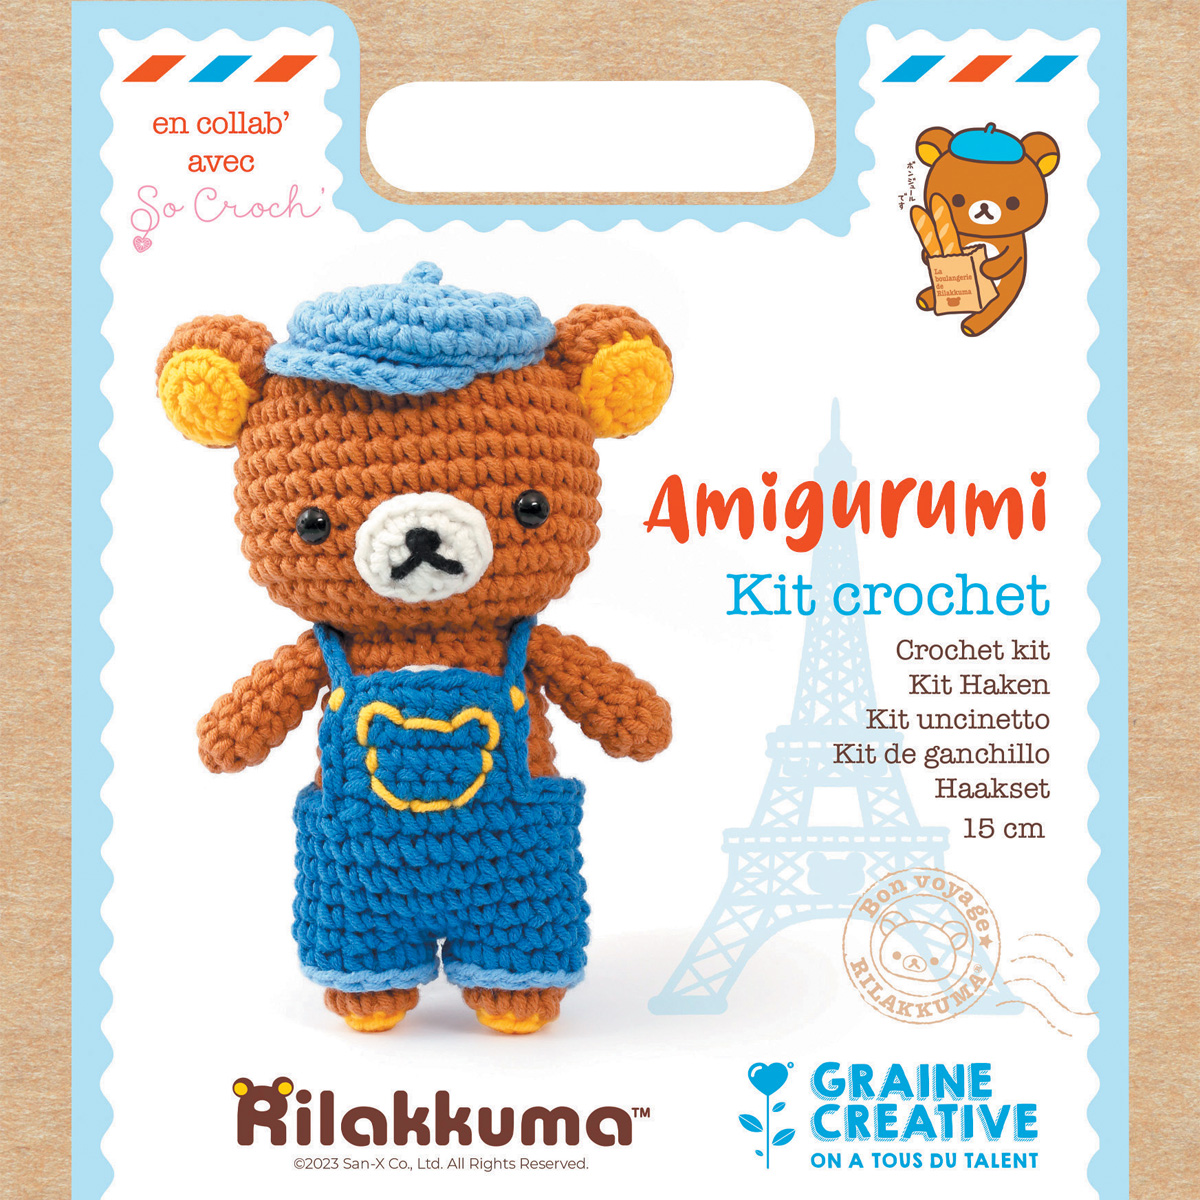 Kit Amigurumi pour confectionner un petit ourson Rilakkuma en crochet